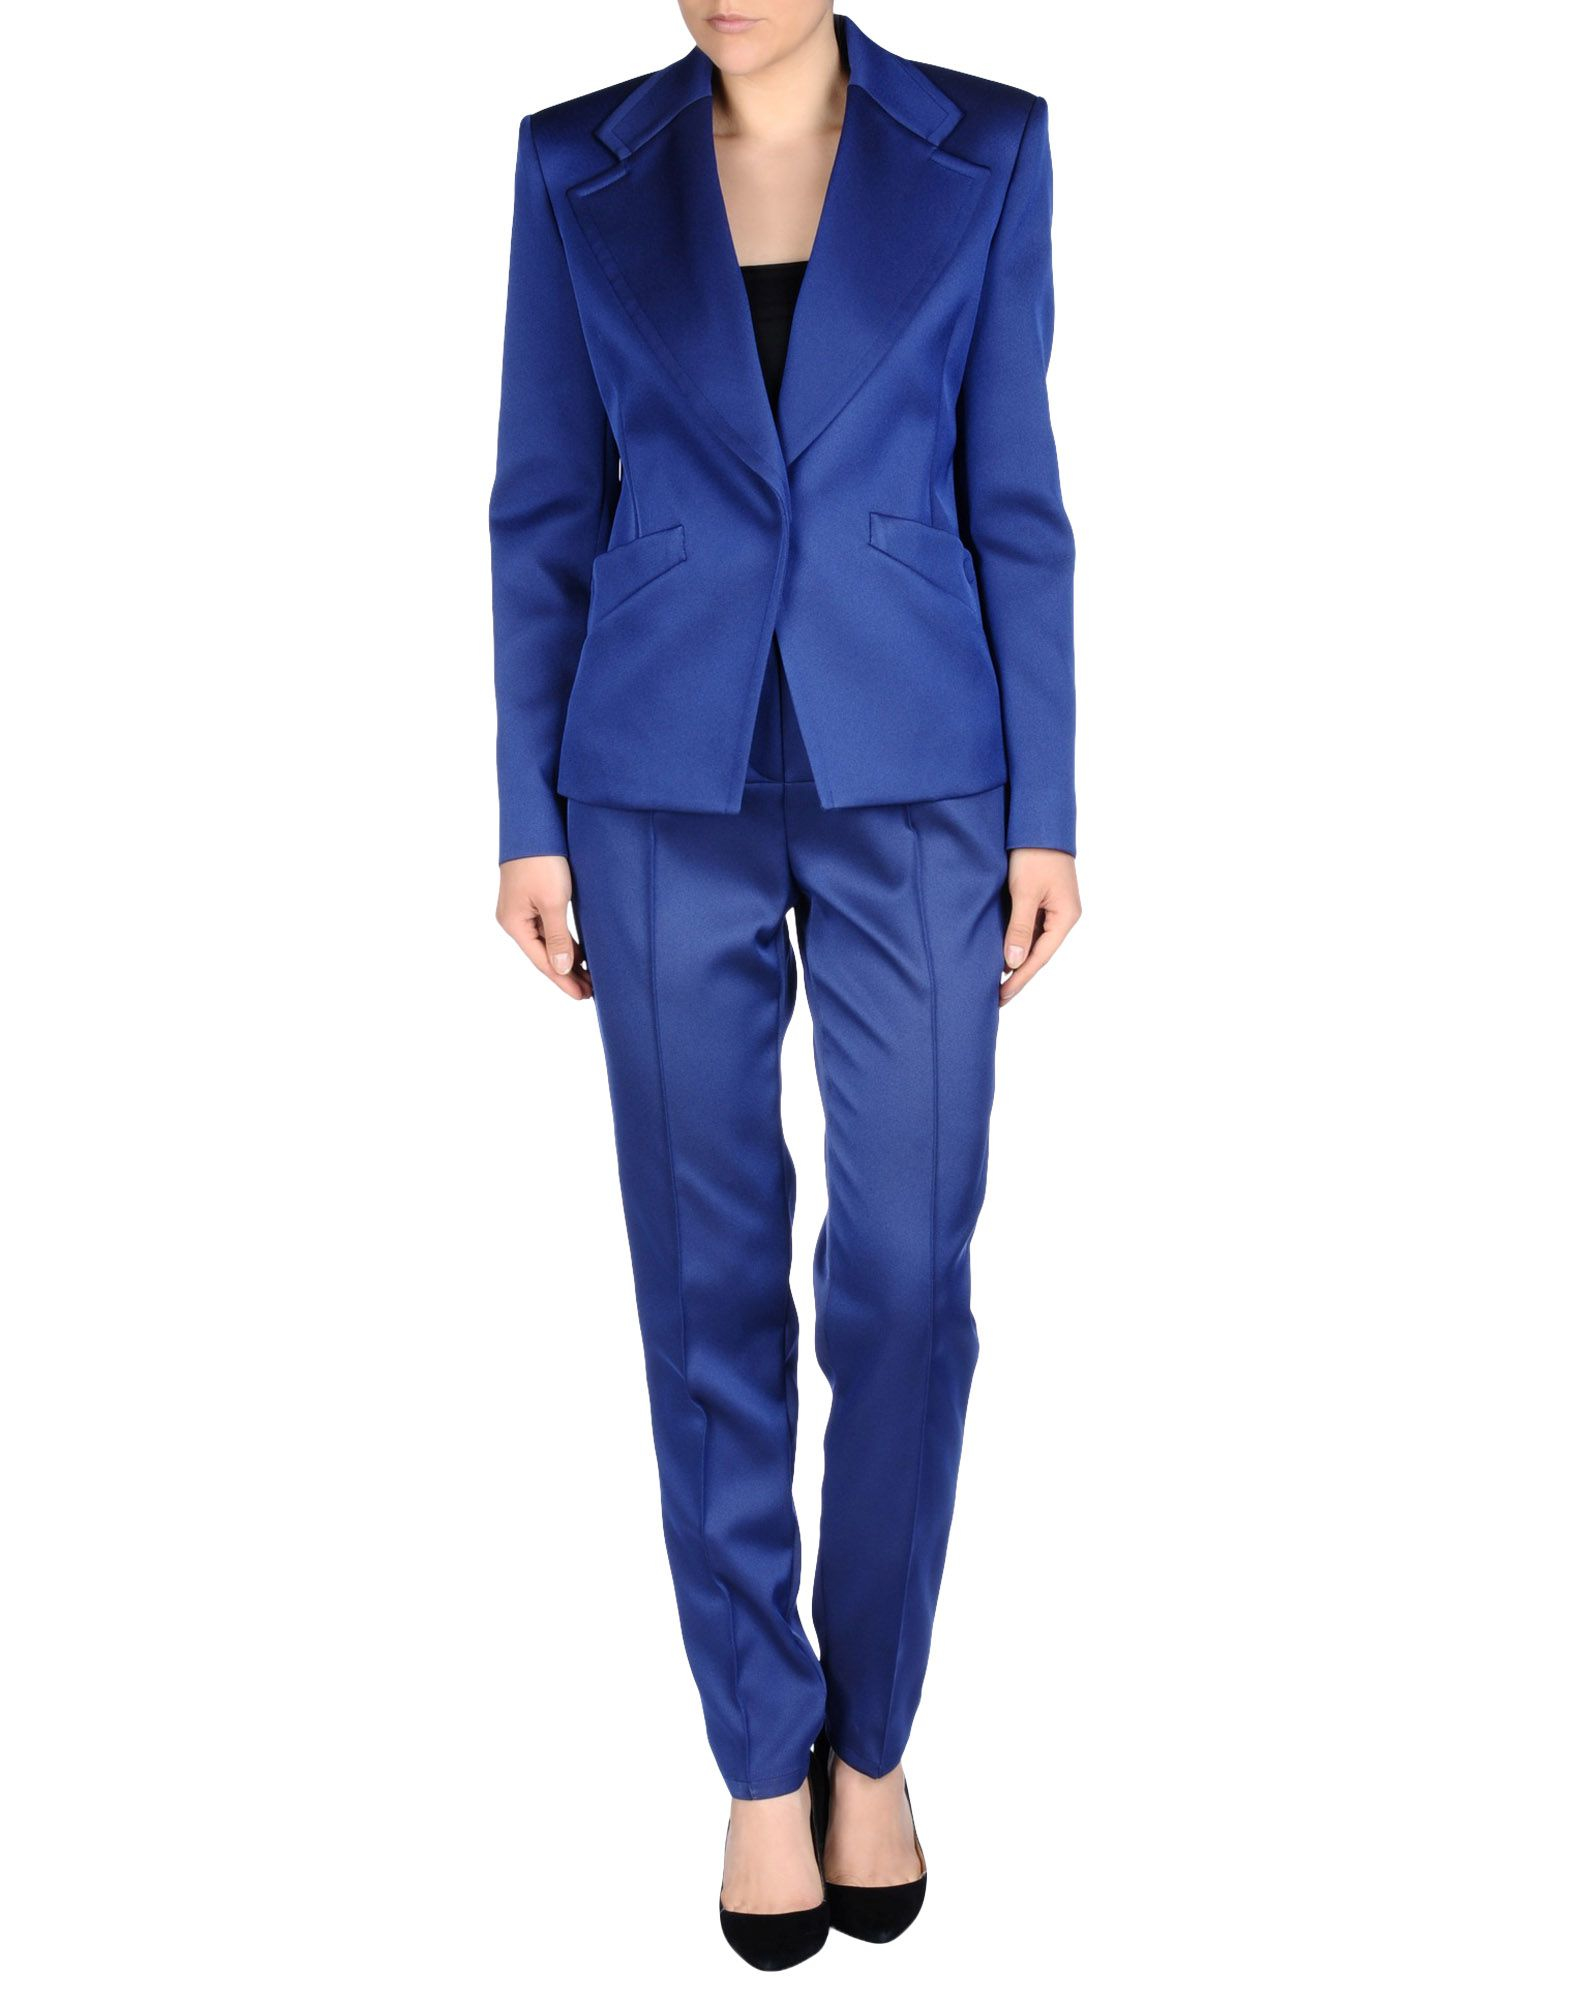 Lyst - Balenciaga Women's Suit in Blue